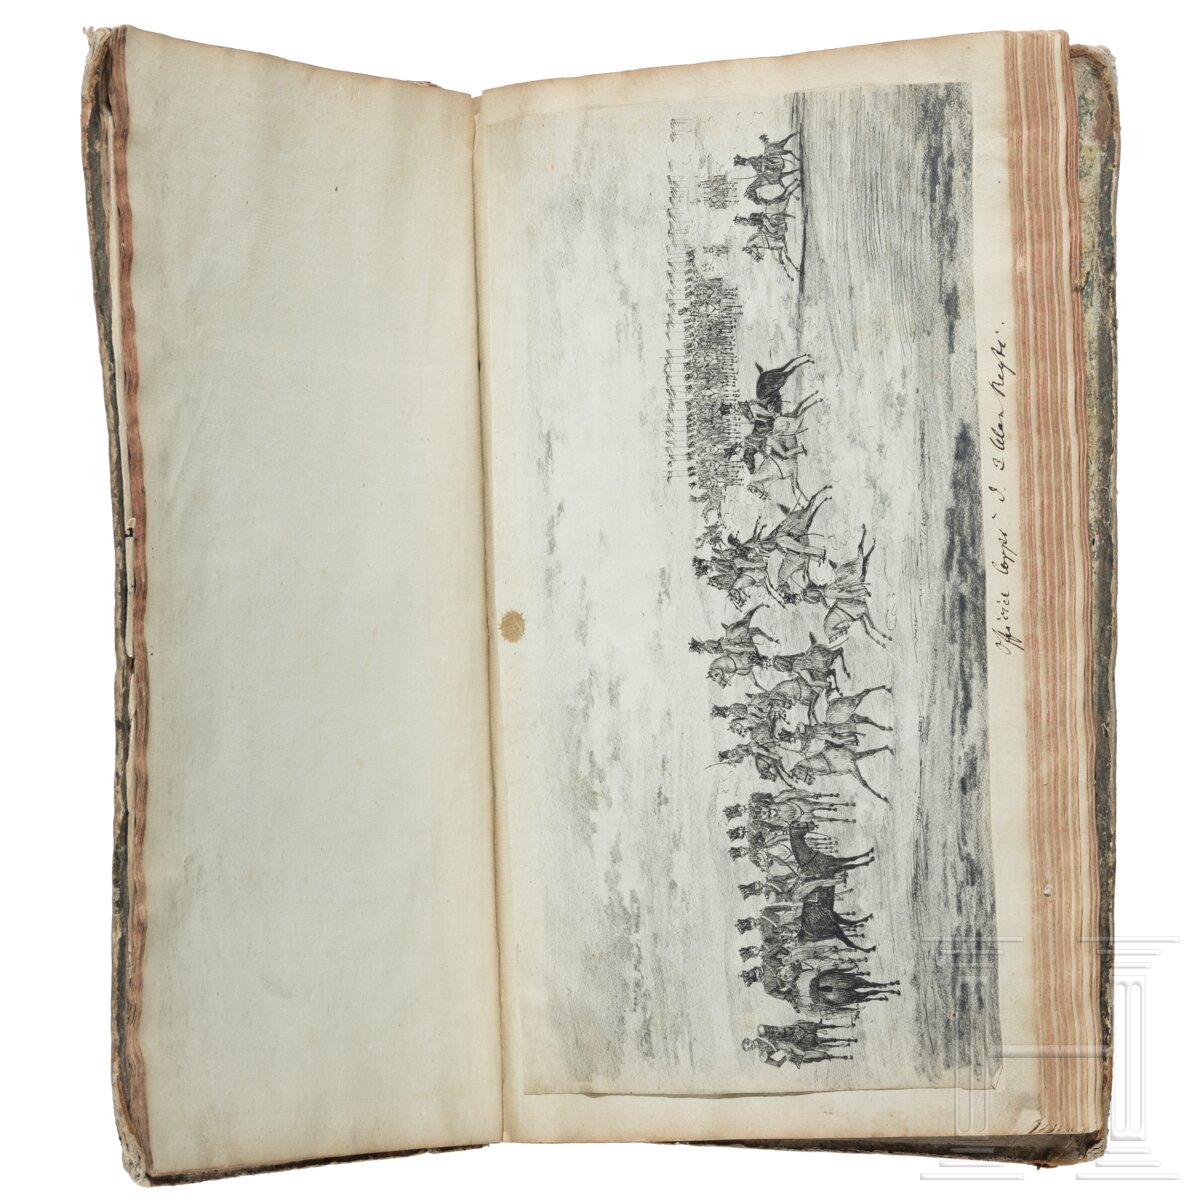 Album mit handgezeichneten Offiziersportraits, um 1830 - 1850 - Image 8 of 10